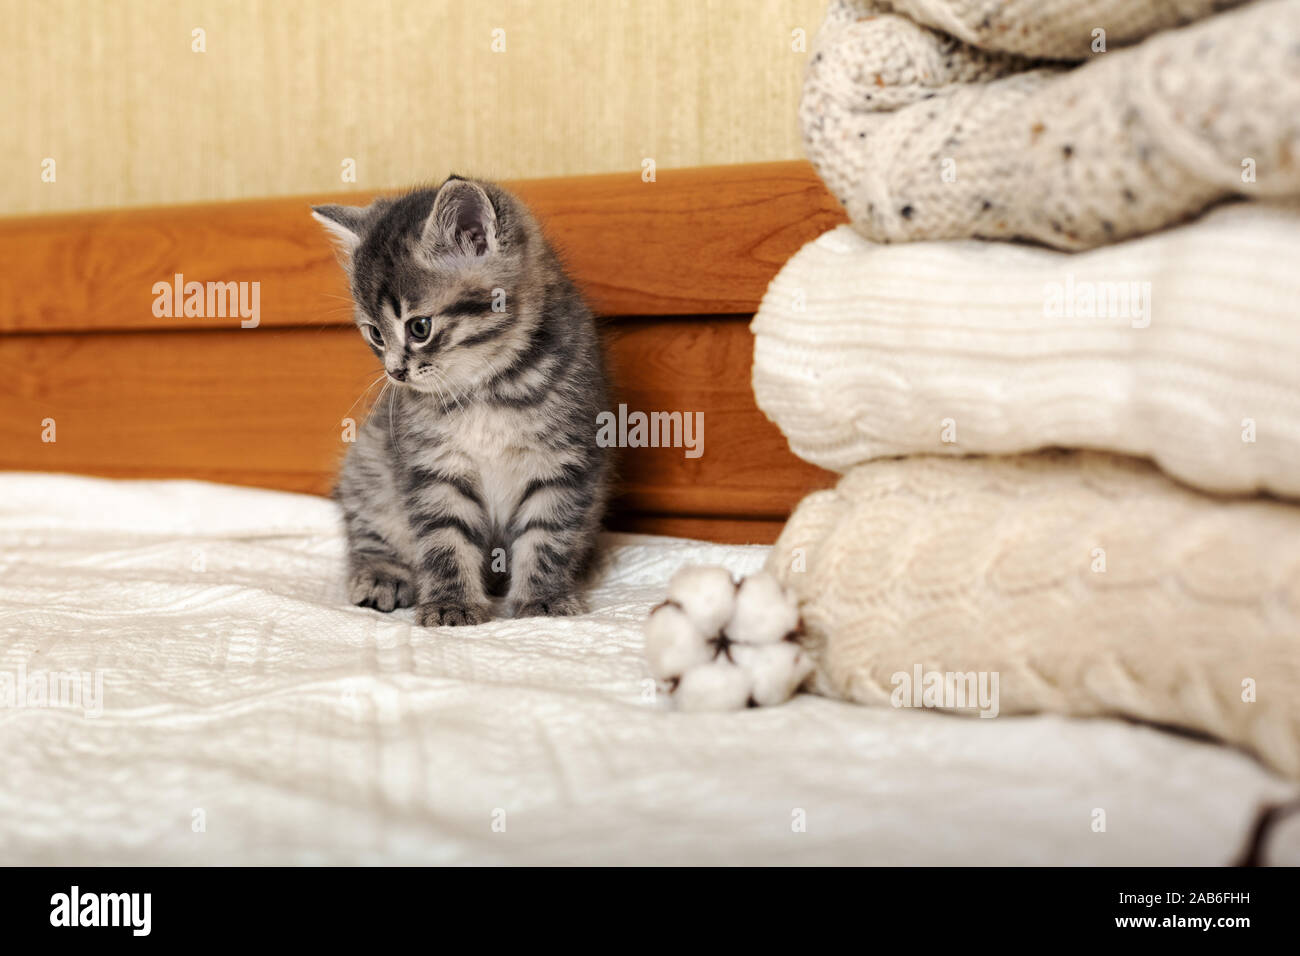 Cute kitten tabby sont assis près de tas de couleurs pastel chaudes tricoté chandails pliés en pile. Chaton nouveau-né, bébé chat, animal domestique, animaux Accueil Banque D'Images